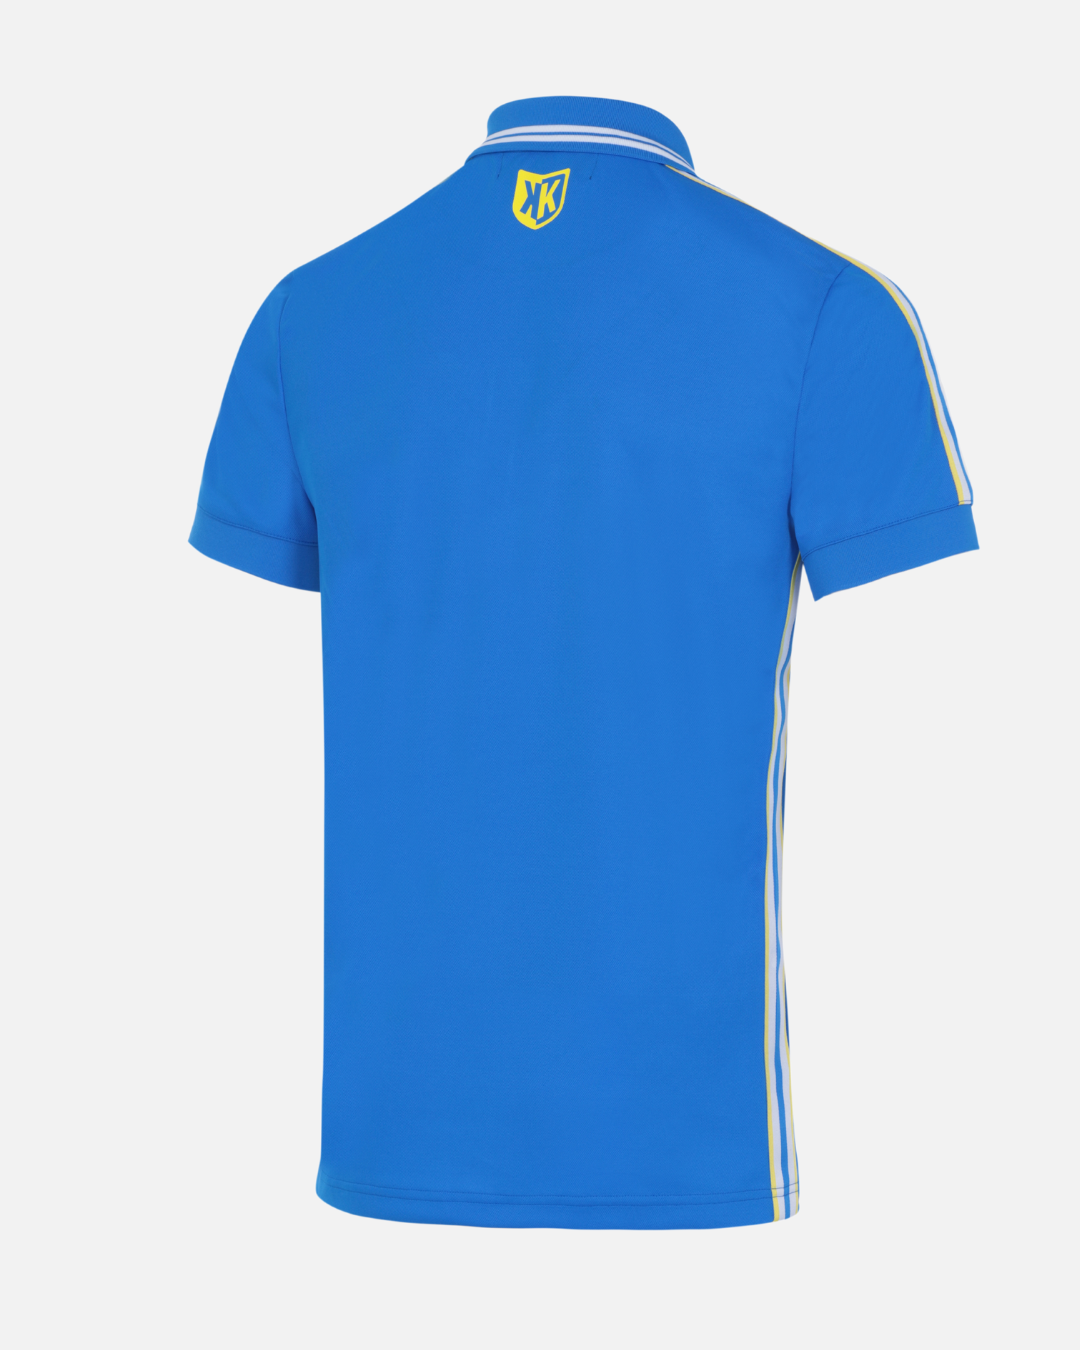 Polo FK Teams - Bleu Royal/Blanc/jaune